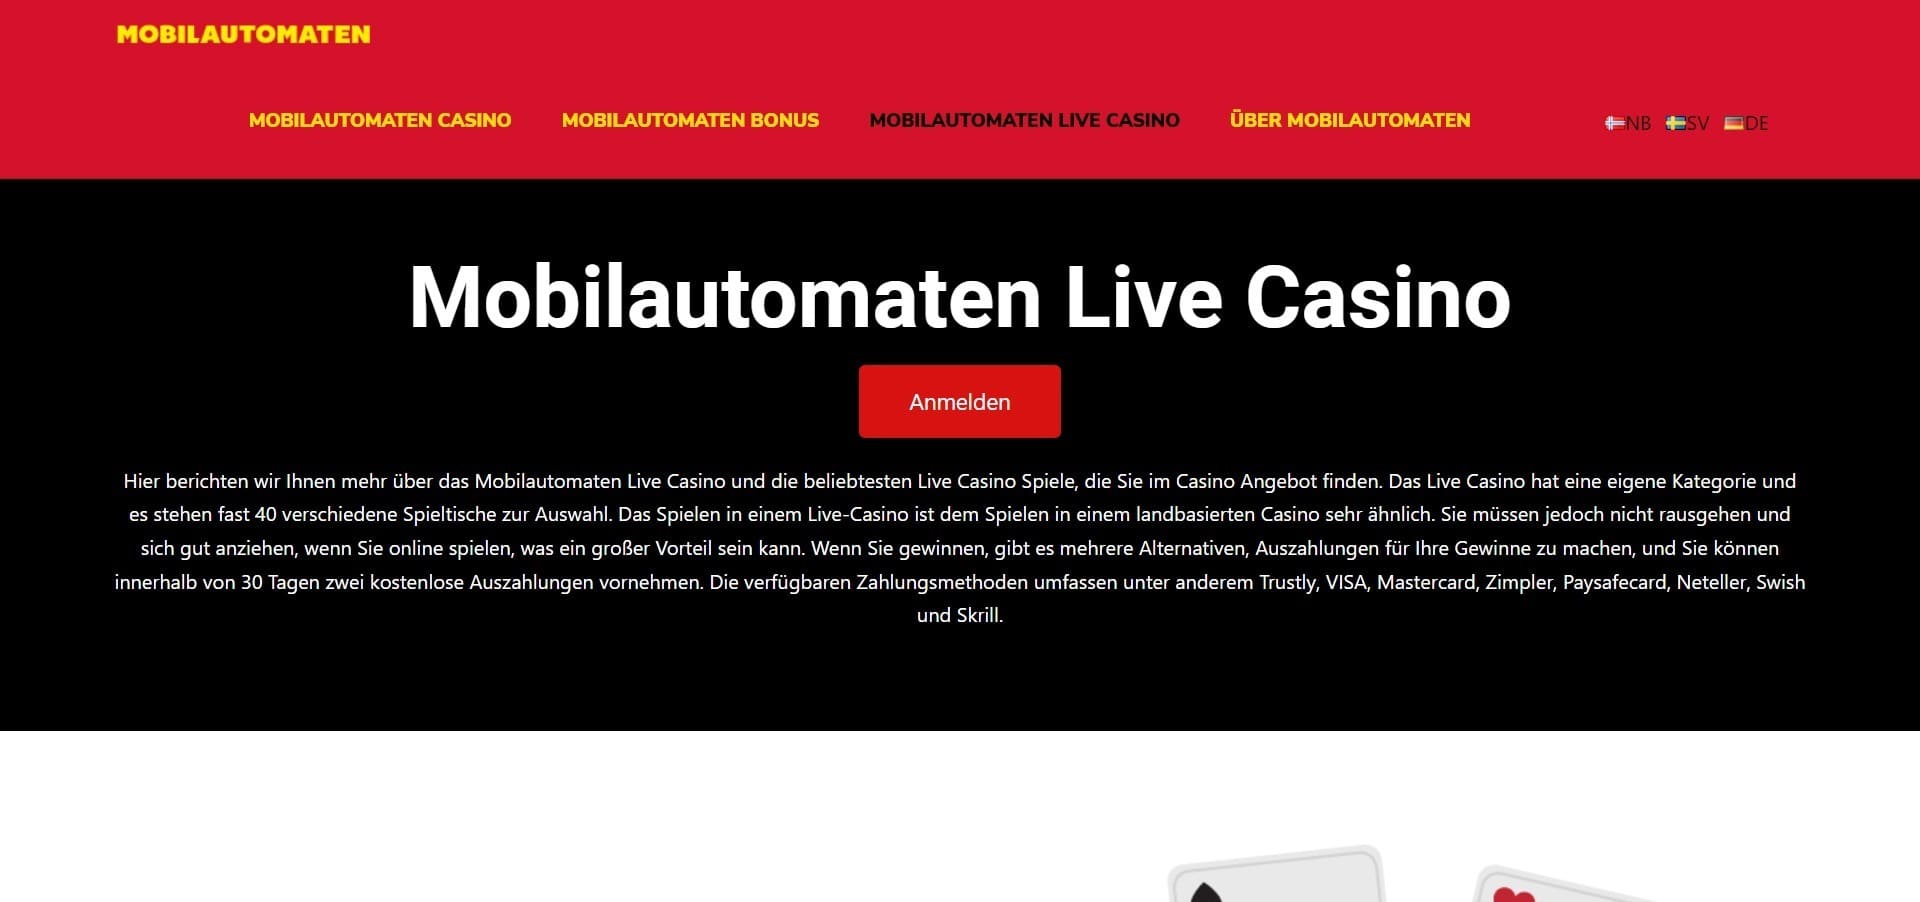 Mobilautomaten Casino live